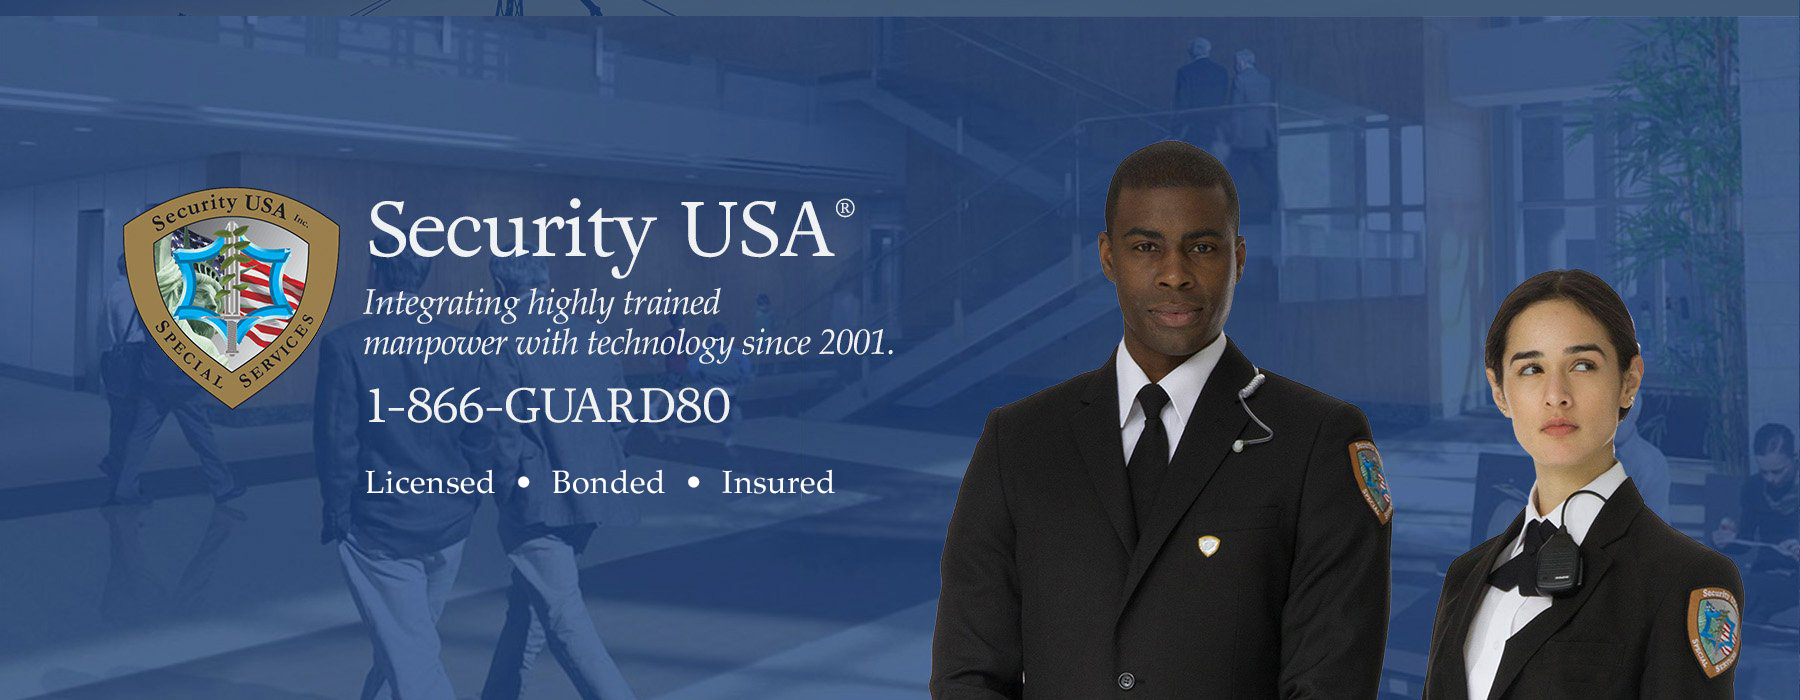 Security USA, Inc